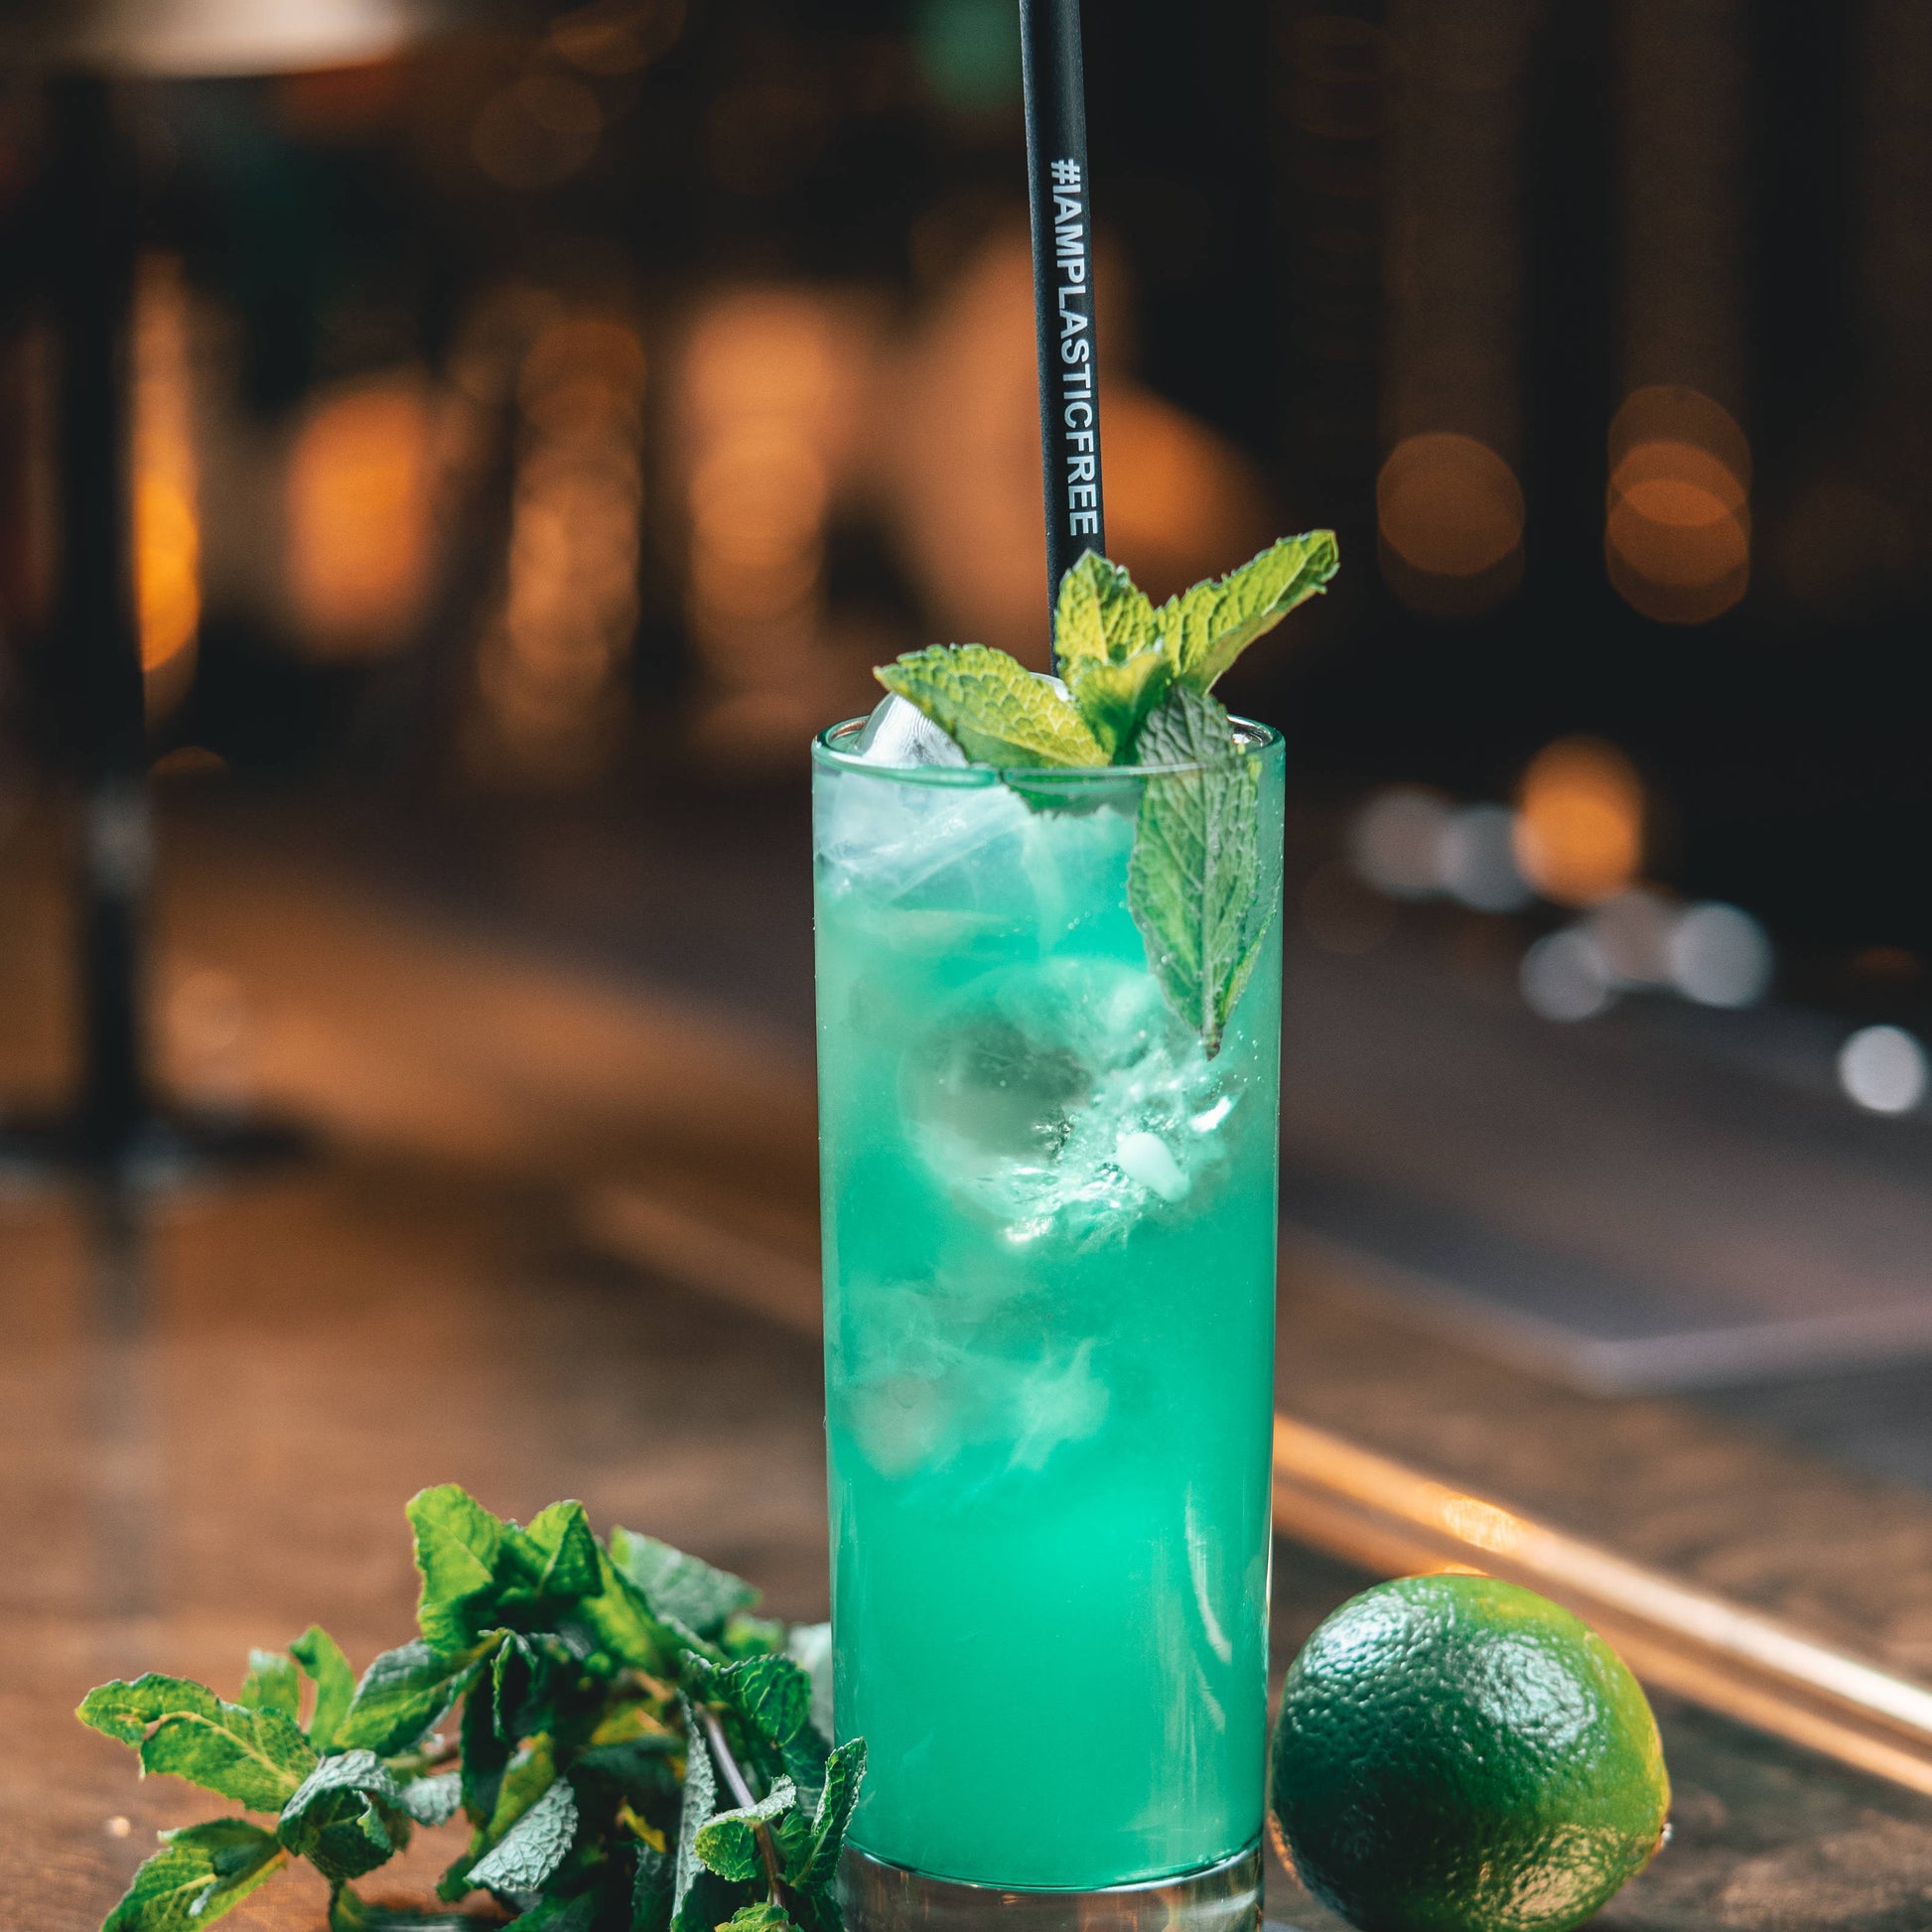 #IAMPLASTICFREE Trinkhalm 2.0 in Highball Glas mit türkisem Cocktail, Eiswürfeln und Minzblättern, dabei Limette und Minzzweig